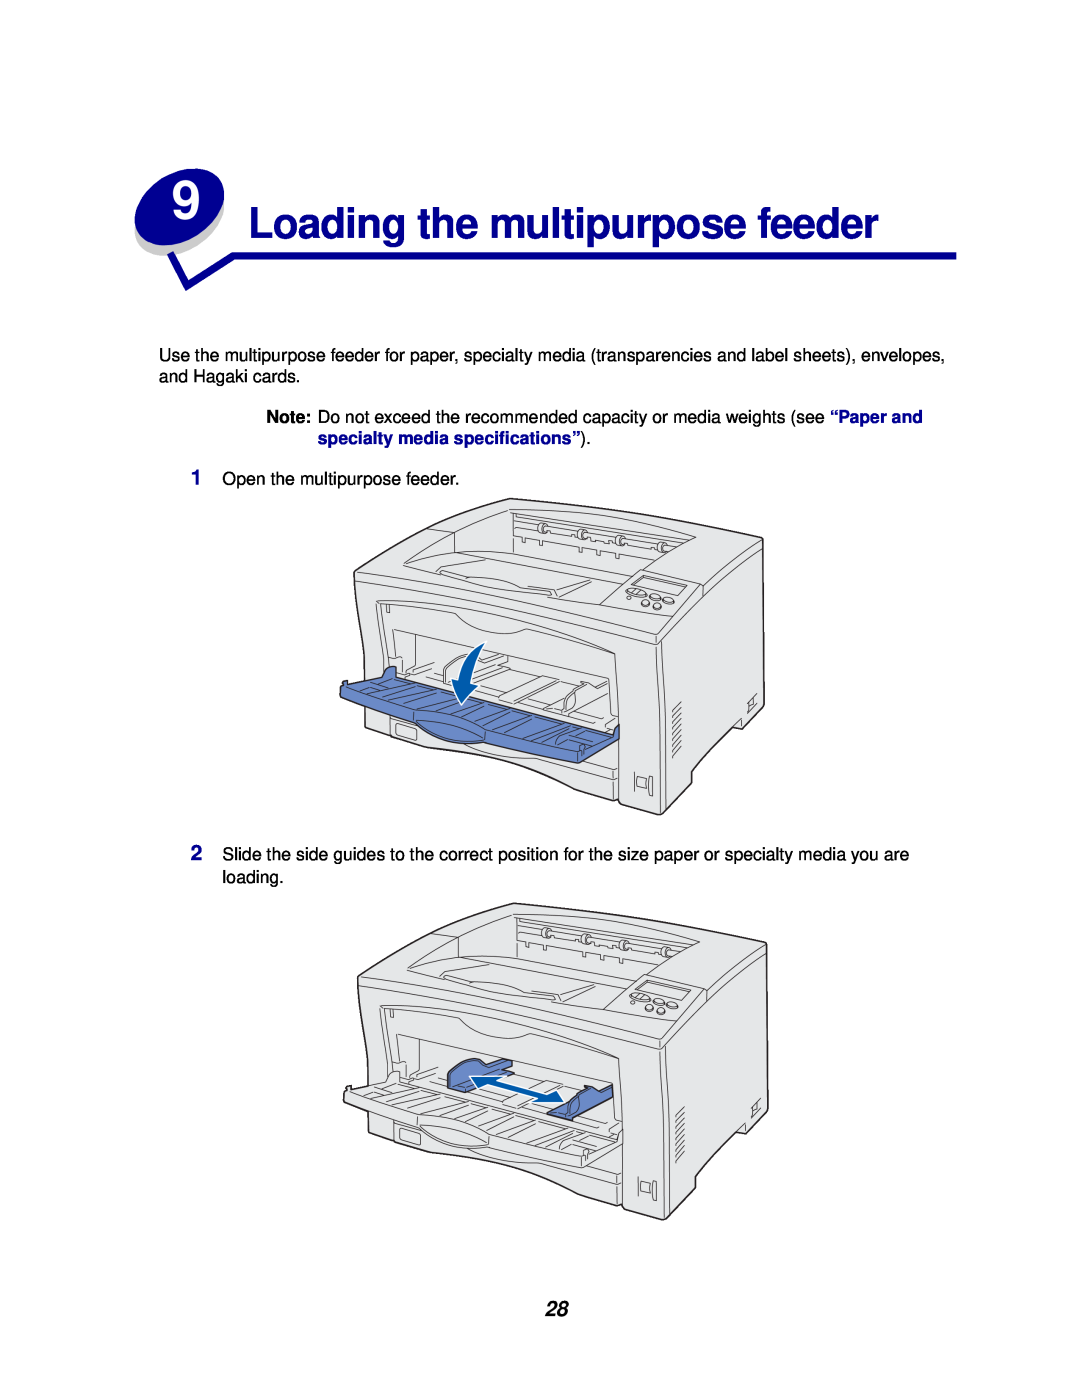 Lexmark 812 manual Loading the multipurpose feeder 